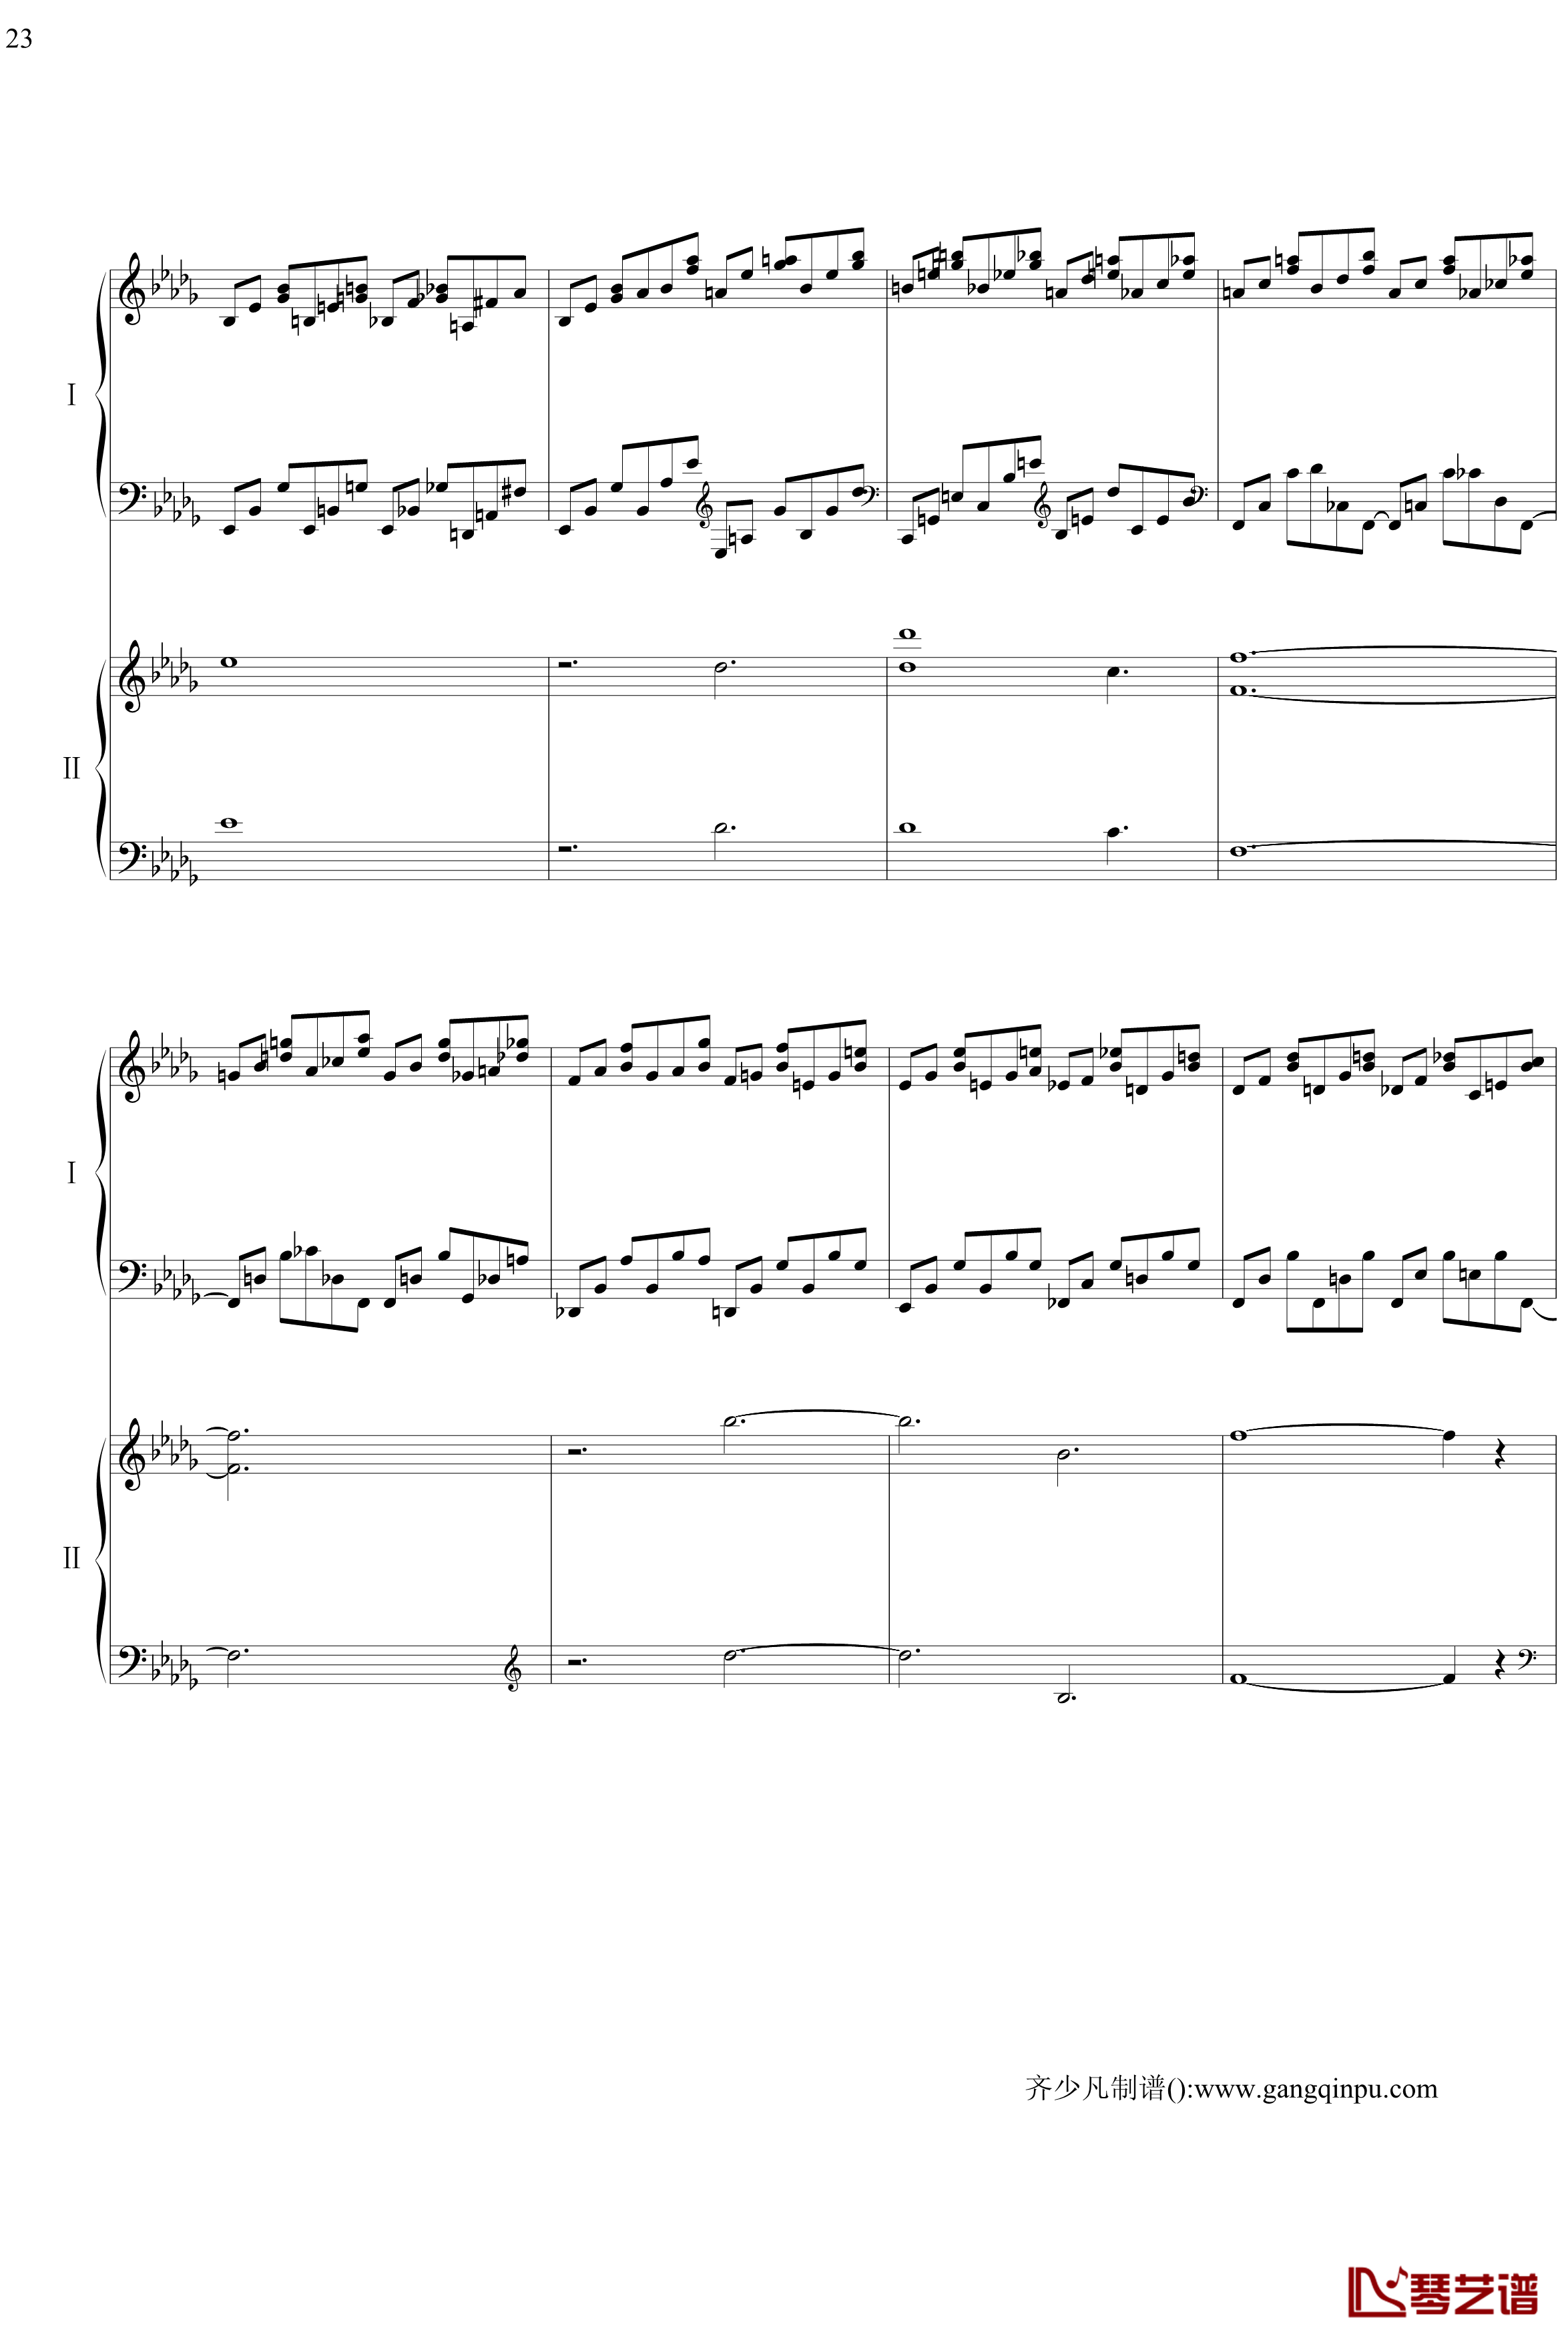 帕格尼尼主题狂想曲钢琴谱-11~18变奏-拉赫马尼若夫23